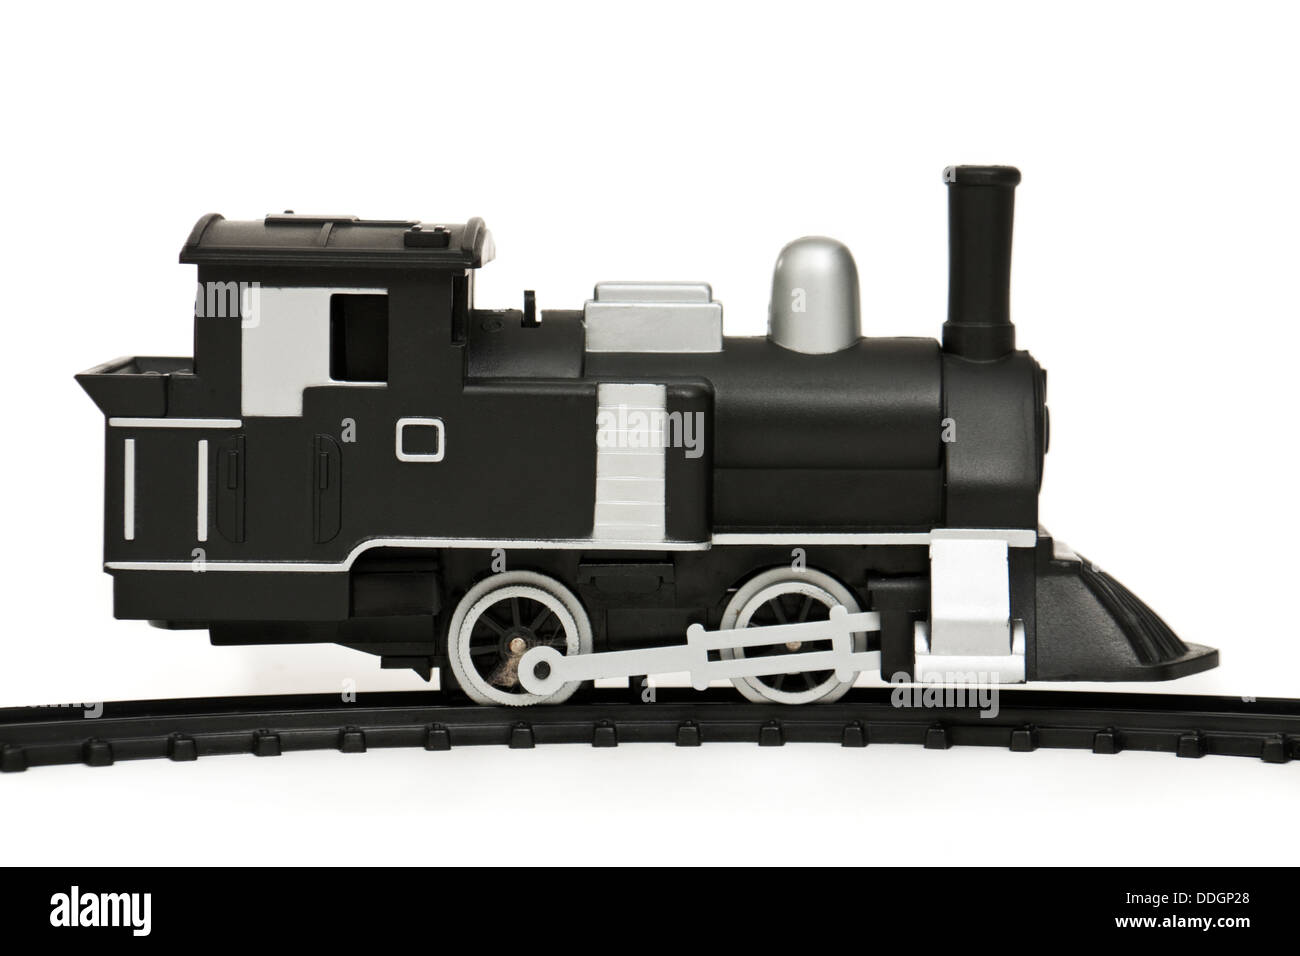 Fonctionnant sur batterie Vintage Model Railway locomotive, partie d'un ensemble complet Banque D'Images